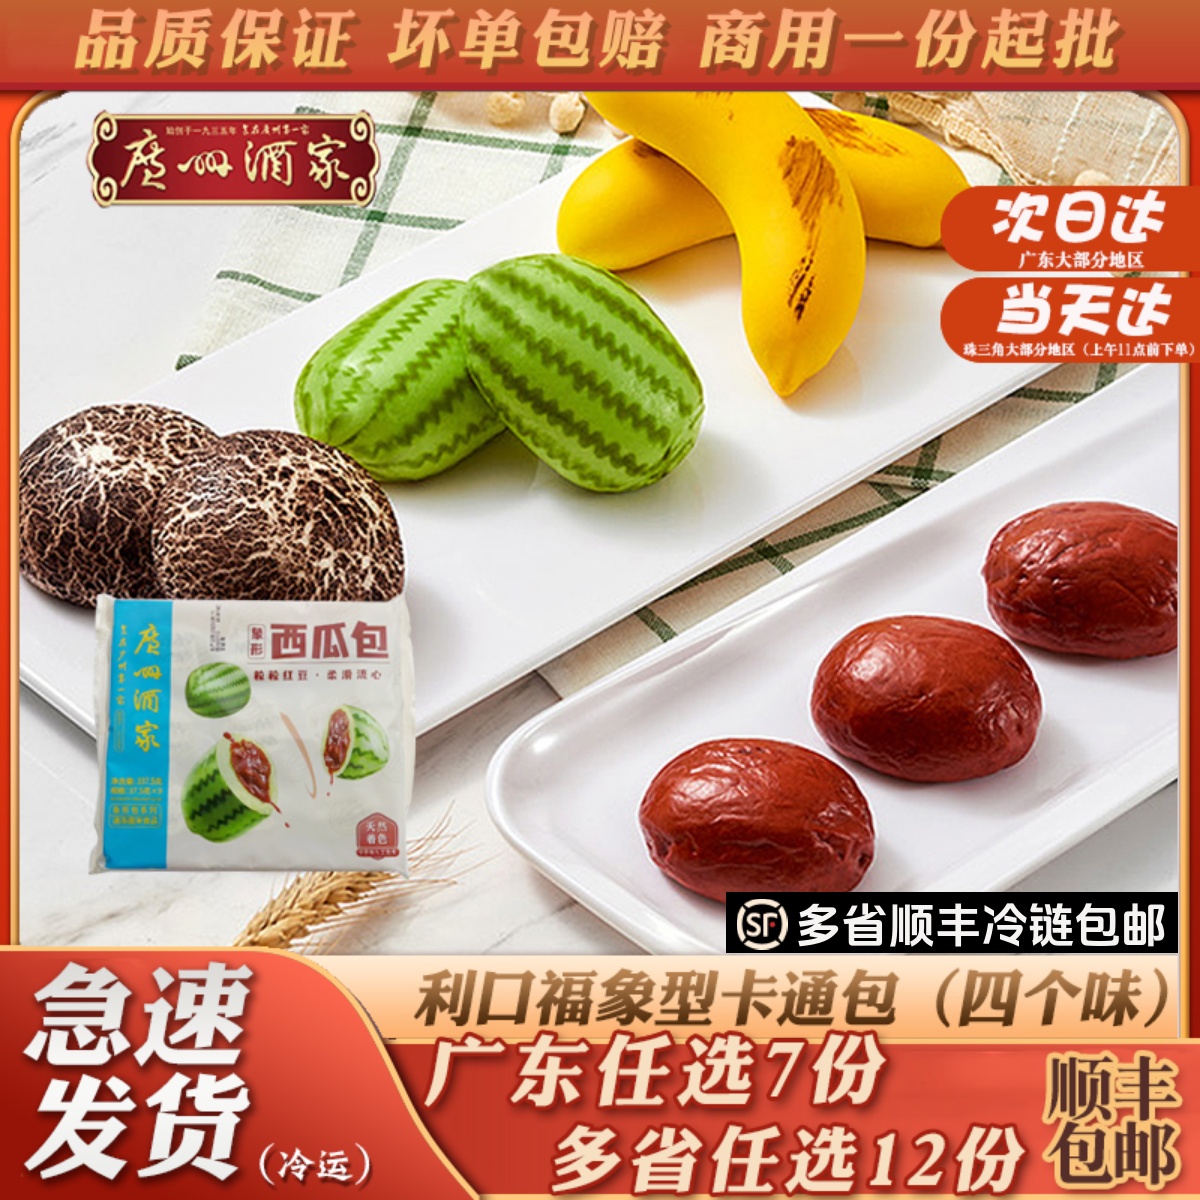 广州酒家利口福象型卡通包红枣西瓜香蕉蘑菇速冻包子儿童营养早餐